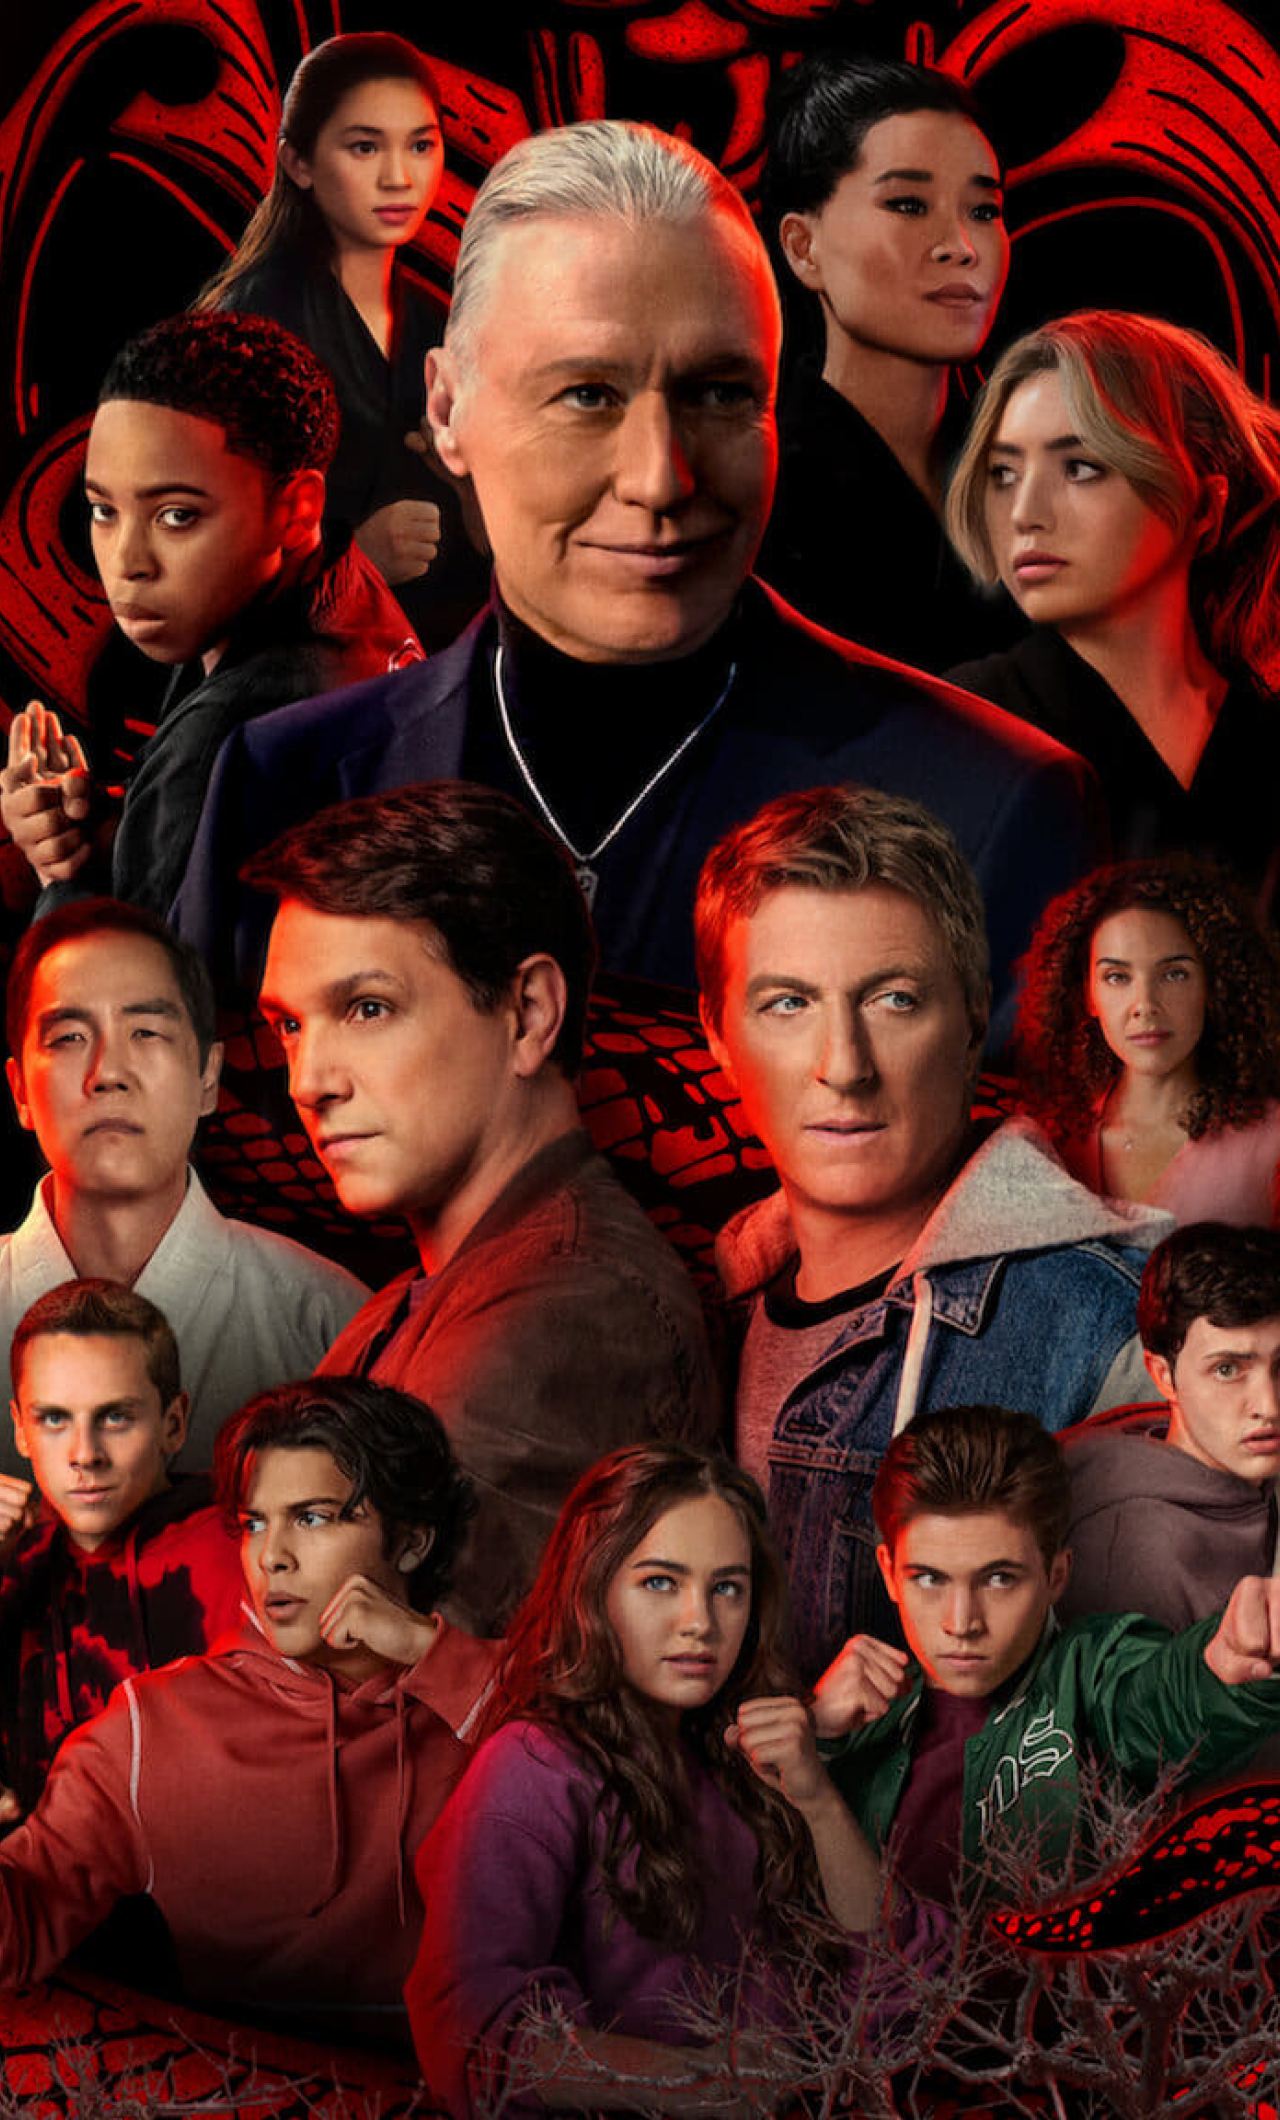 Cobra Kai Season 5 On Netflix Season 6 Scripts Are Already Being Written